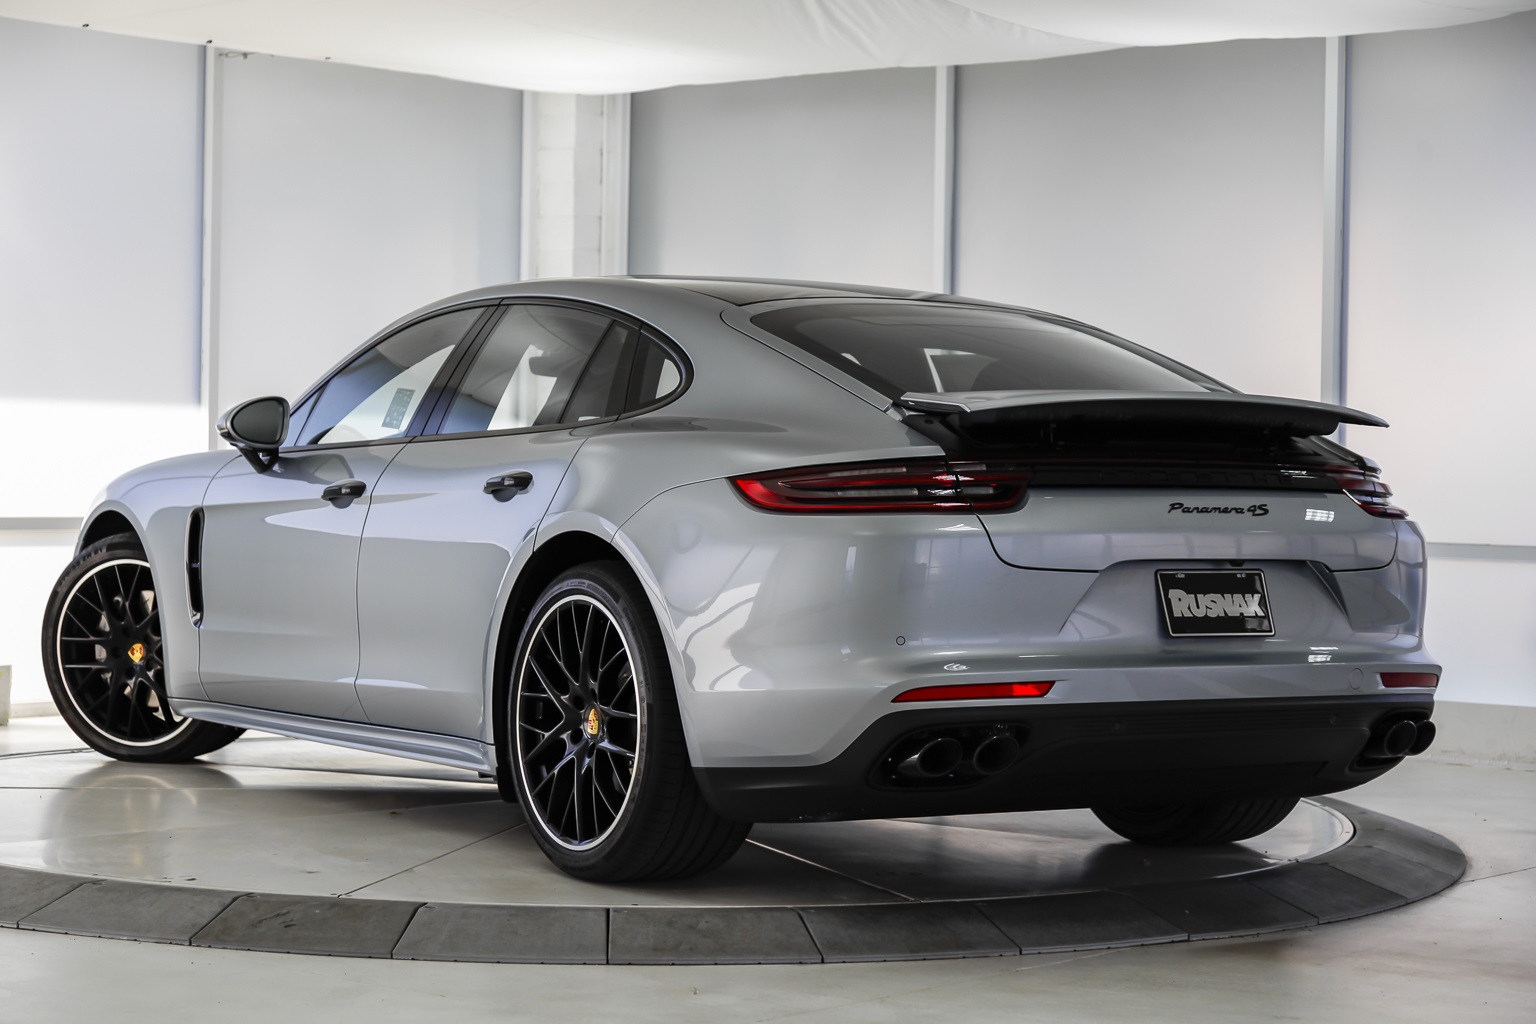 New 2020 Porsche Panamera 4S 4D Hatchback in Pasadena